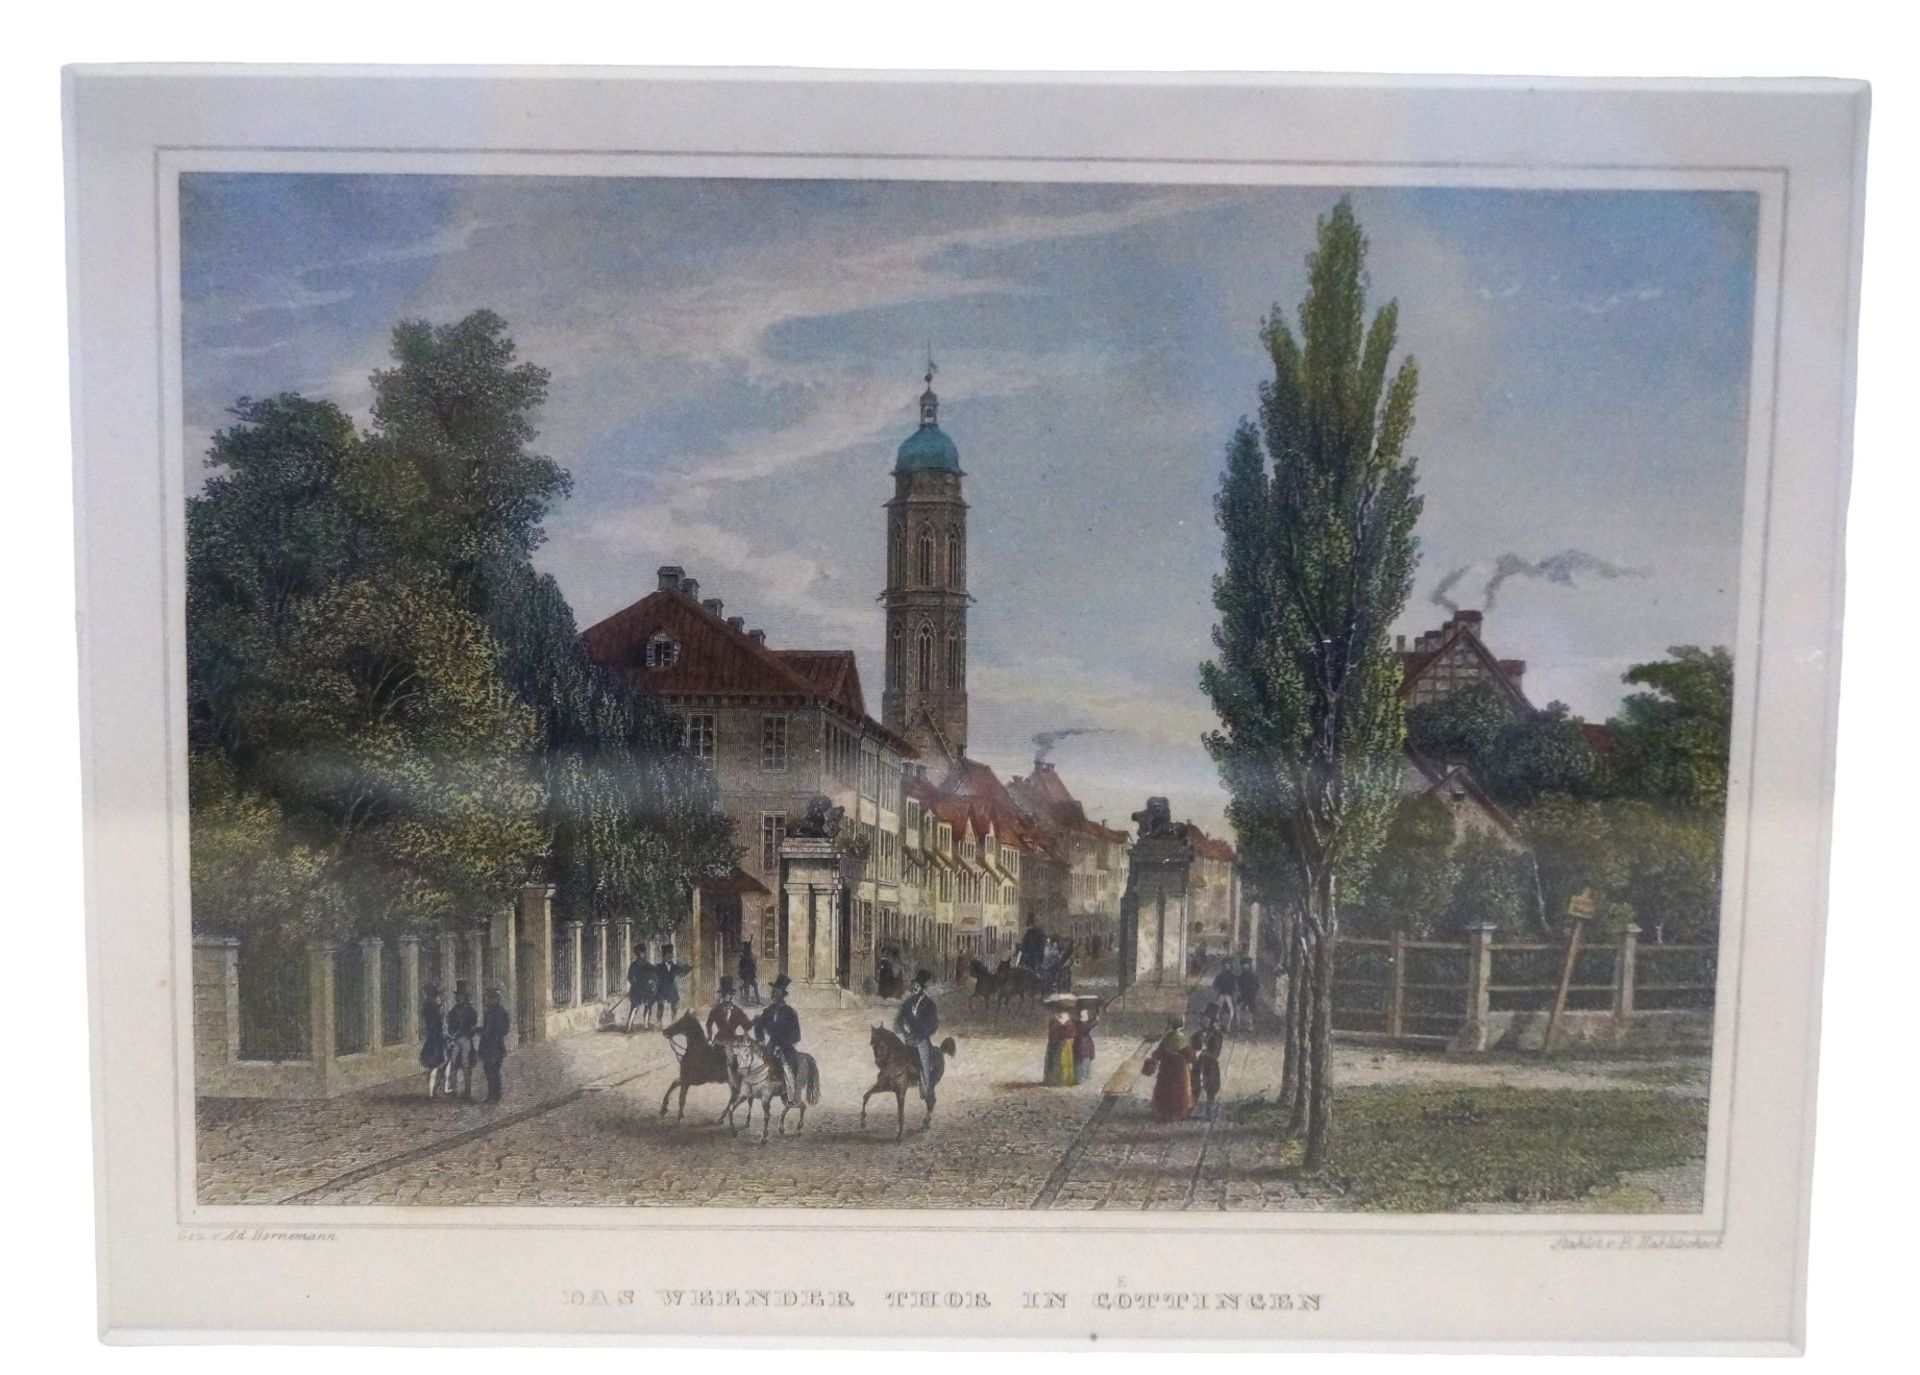 Kolorierter Stahlstich "Das Weender Tor in Göttingen" von E. Hablitscheck; gedruckt von Ad. Hornema